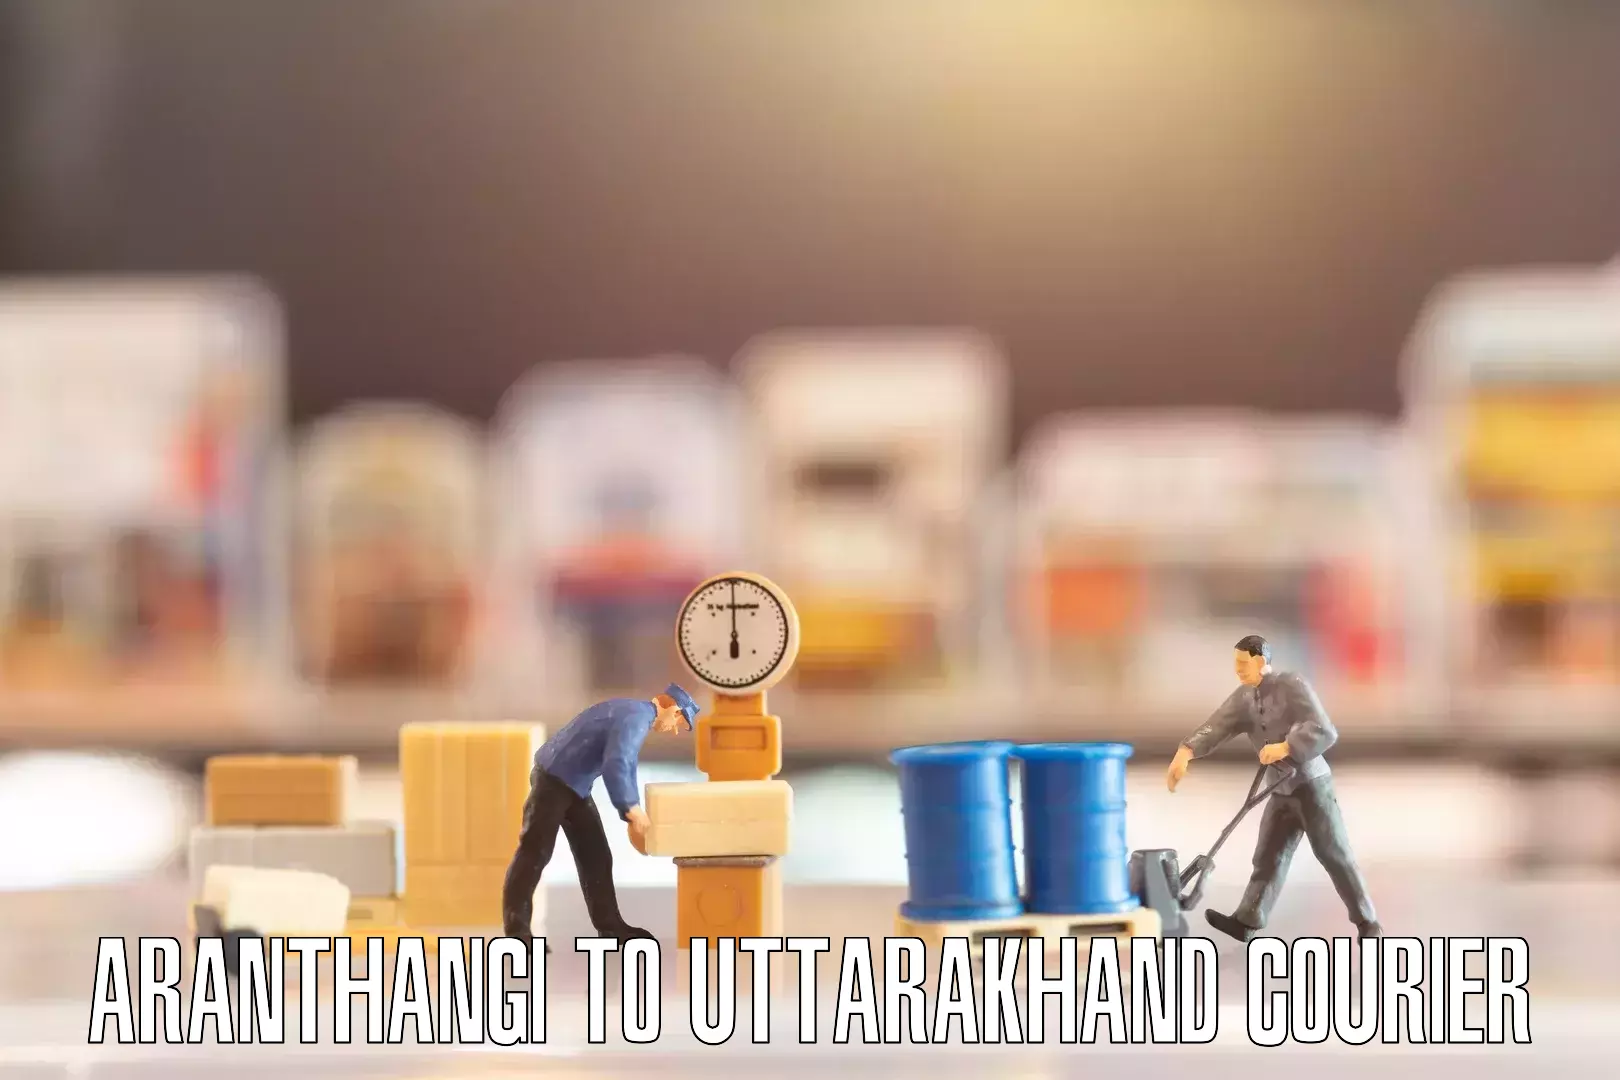 Advanced moving solutions Aranthangi to Uttarkashi